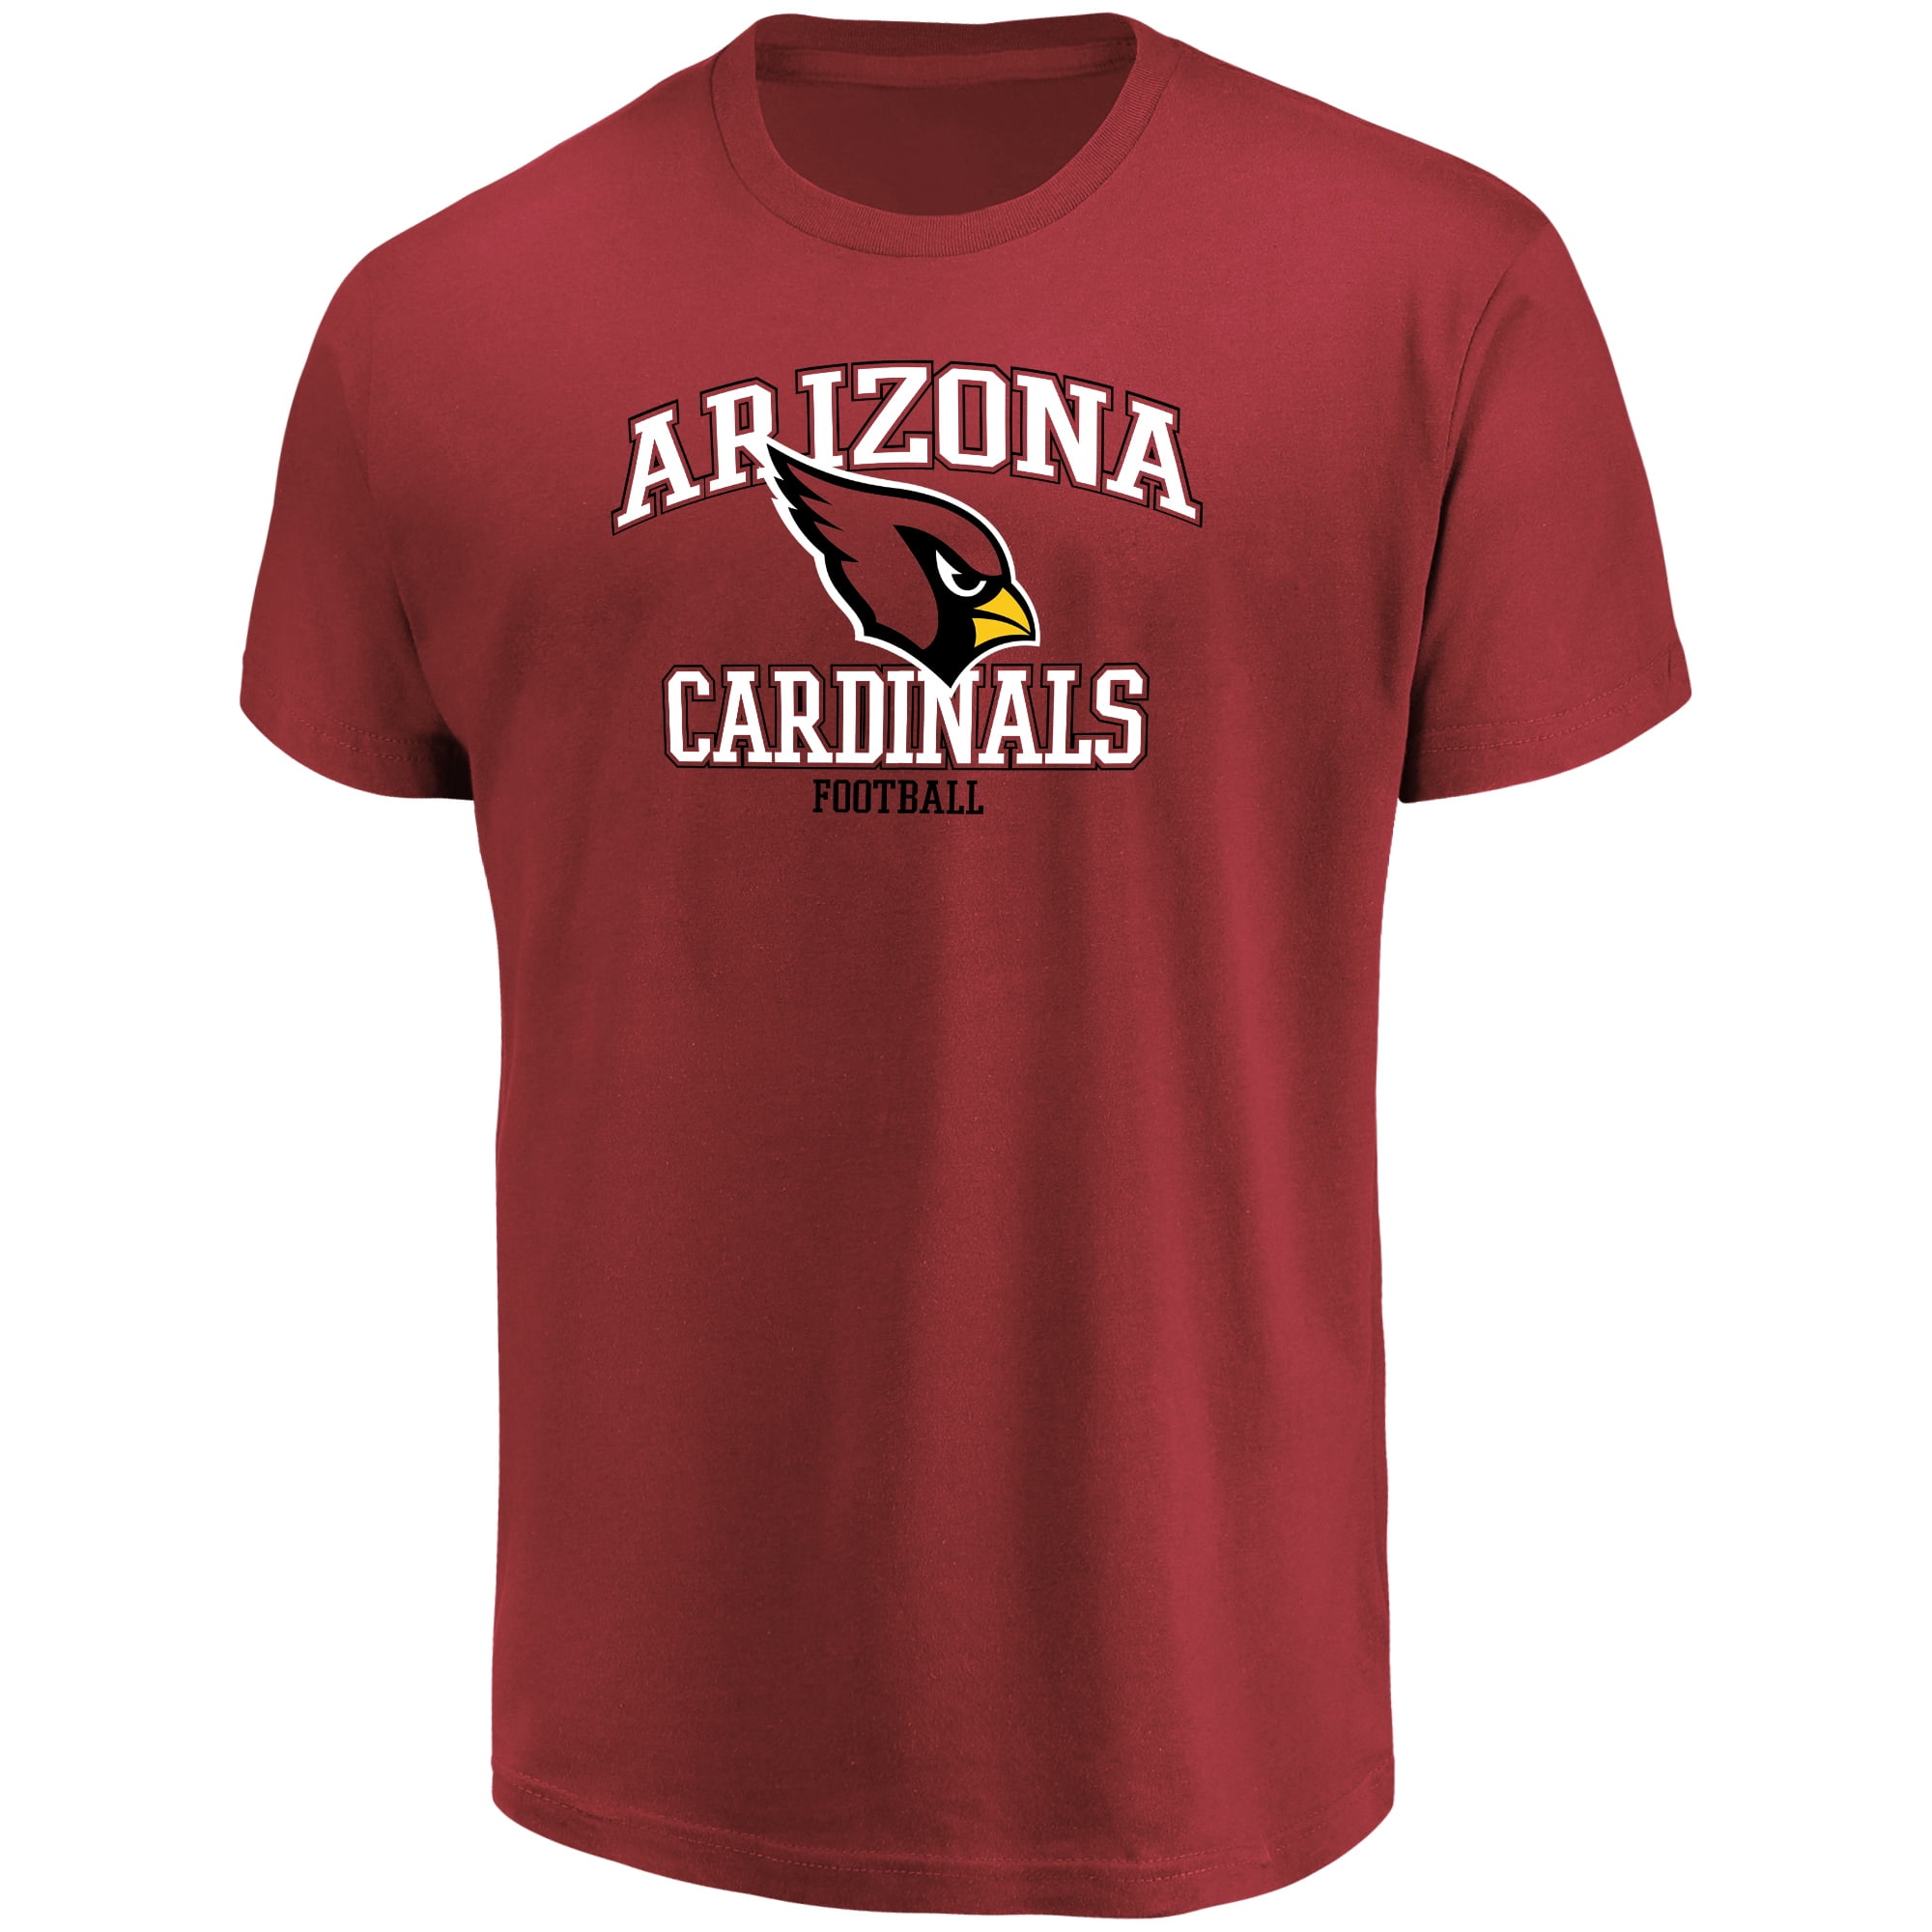 arizona cardinals tee shirts